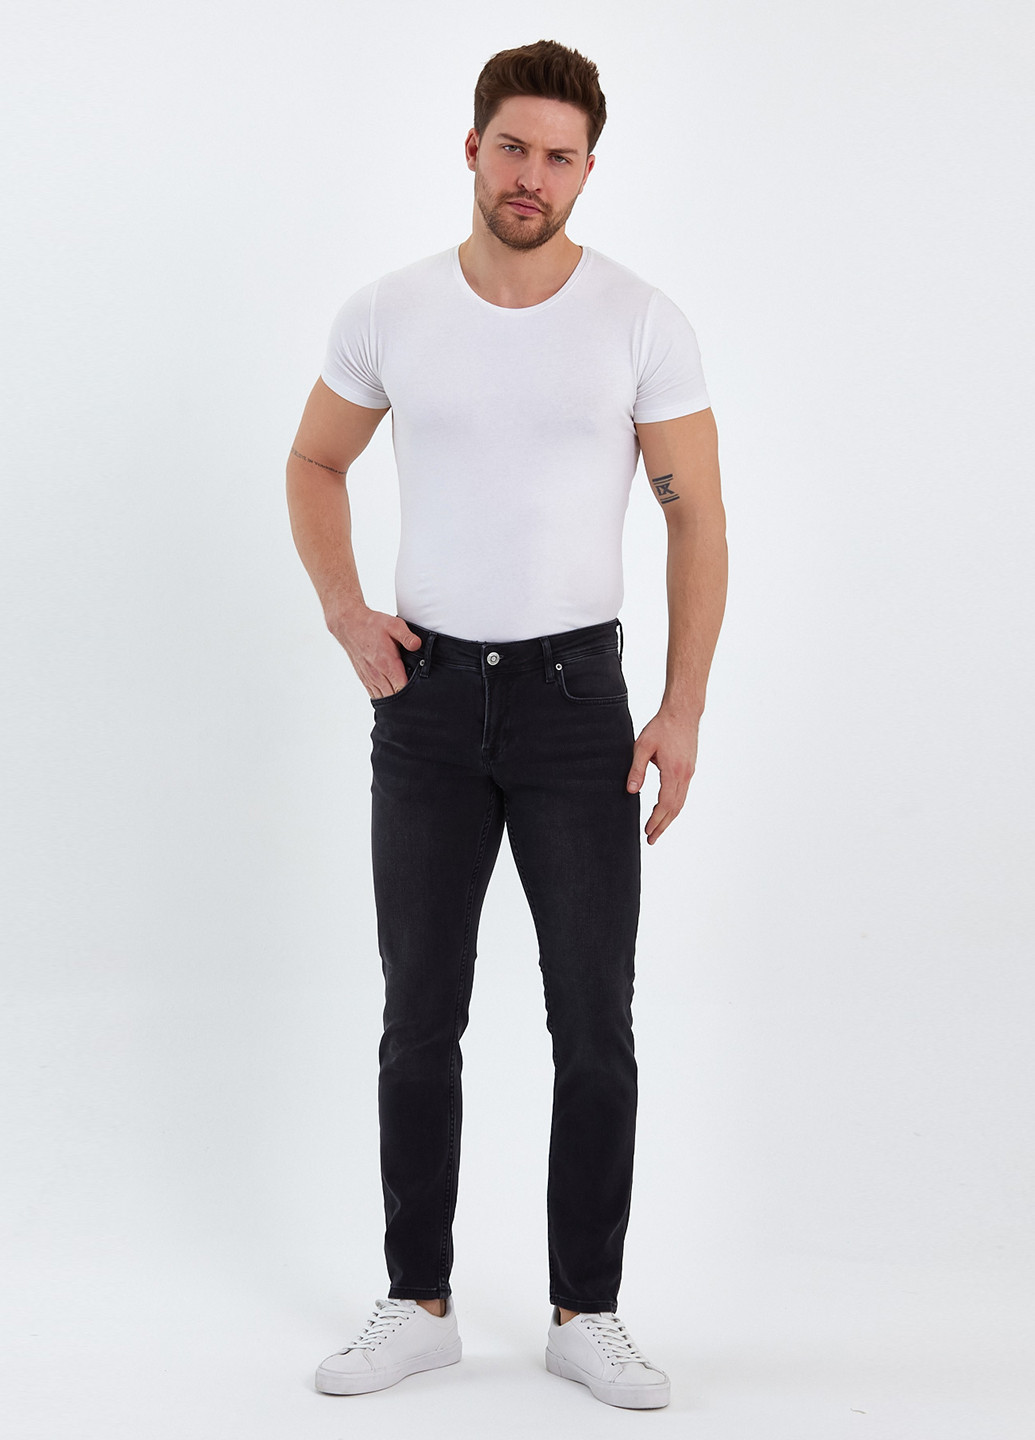 Черные демисезонные скинни джинсы Trend Collection